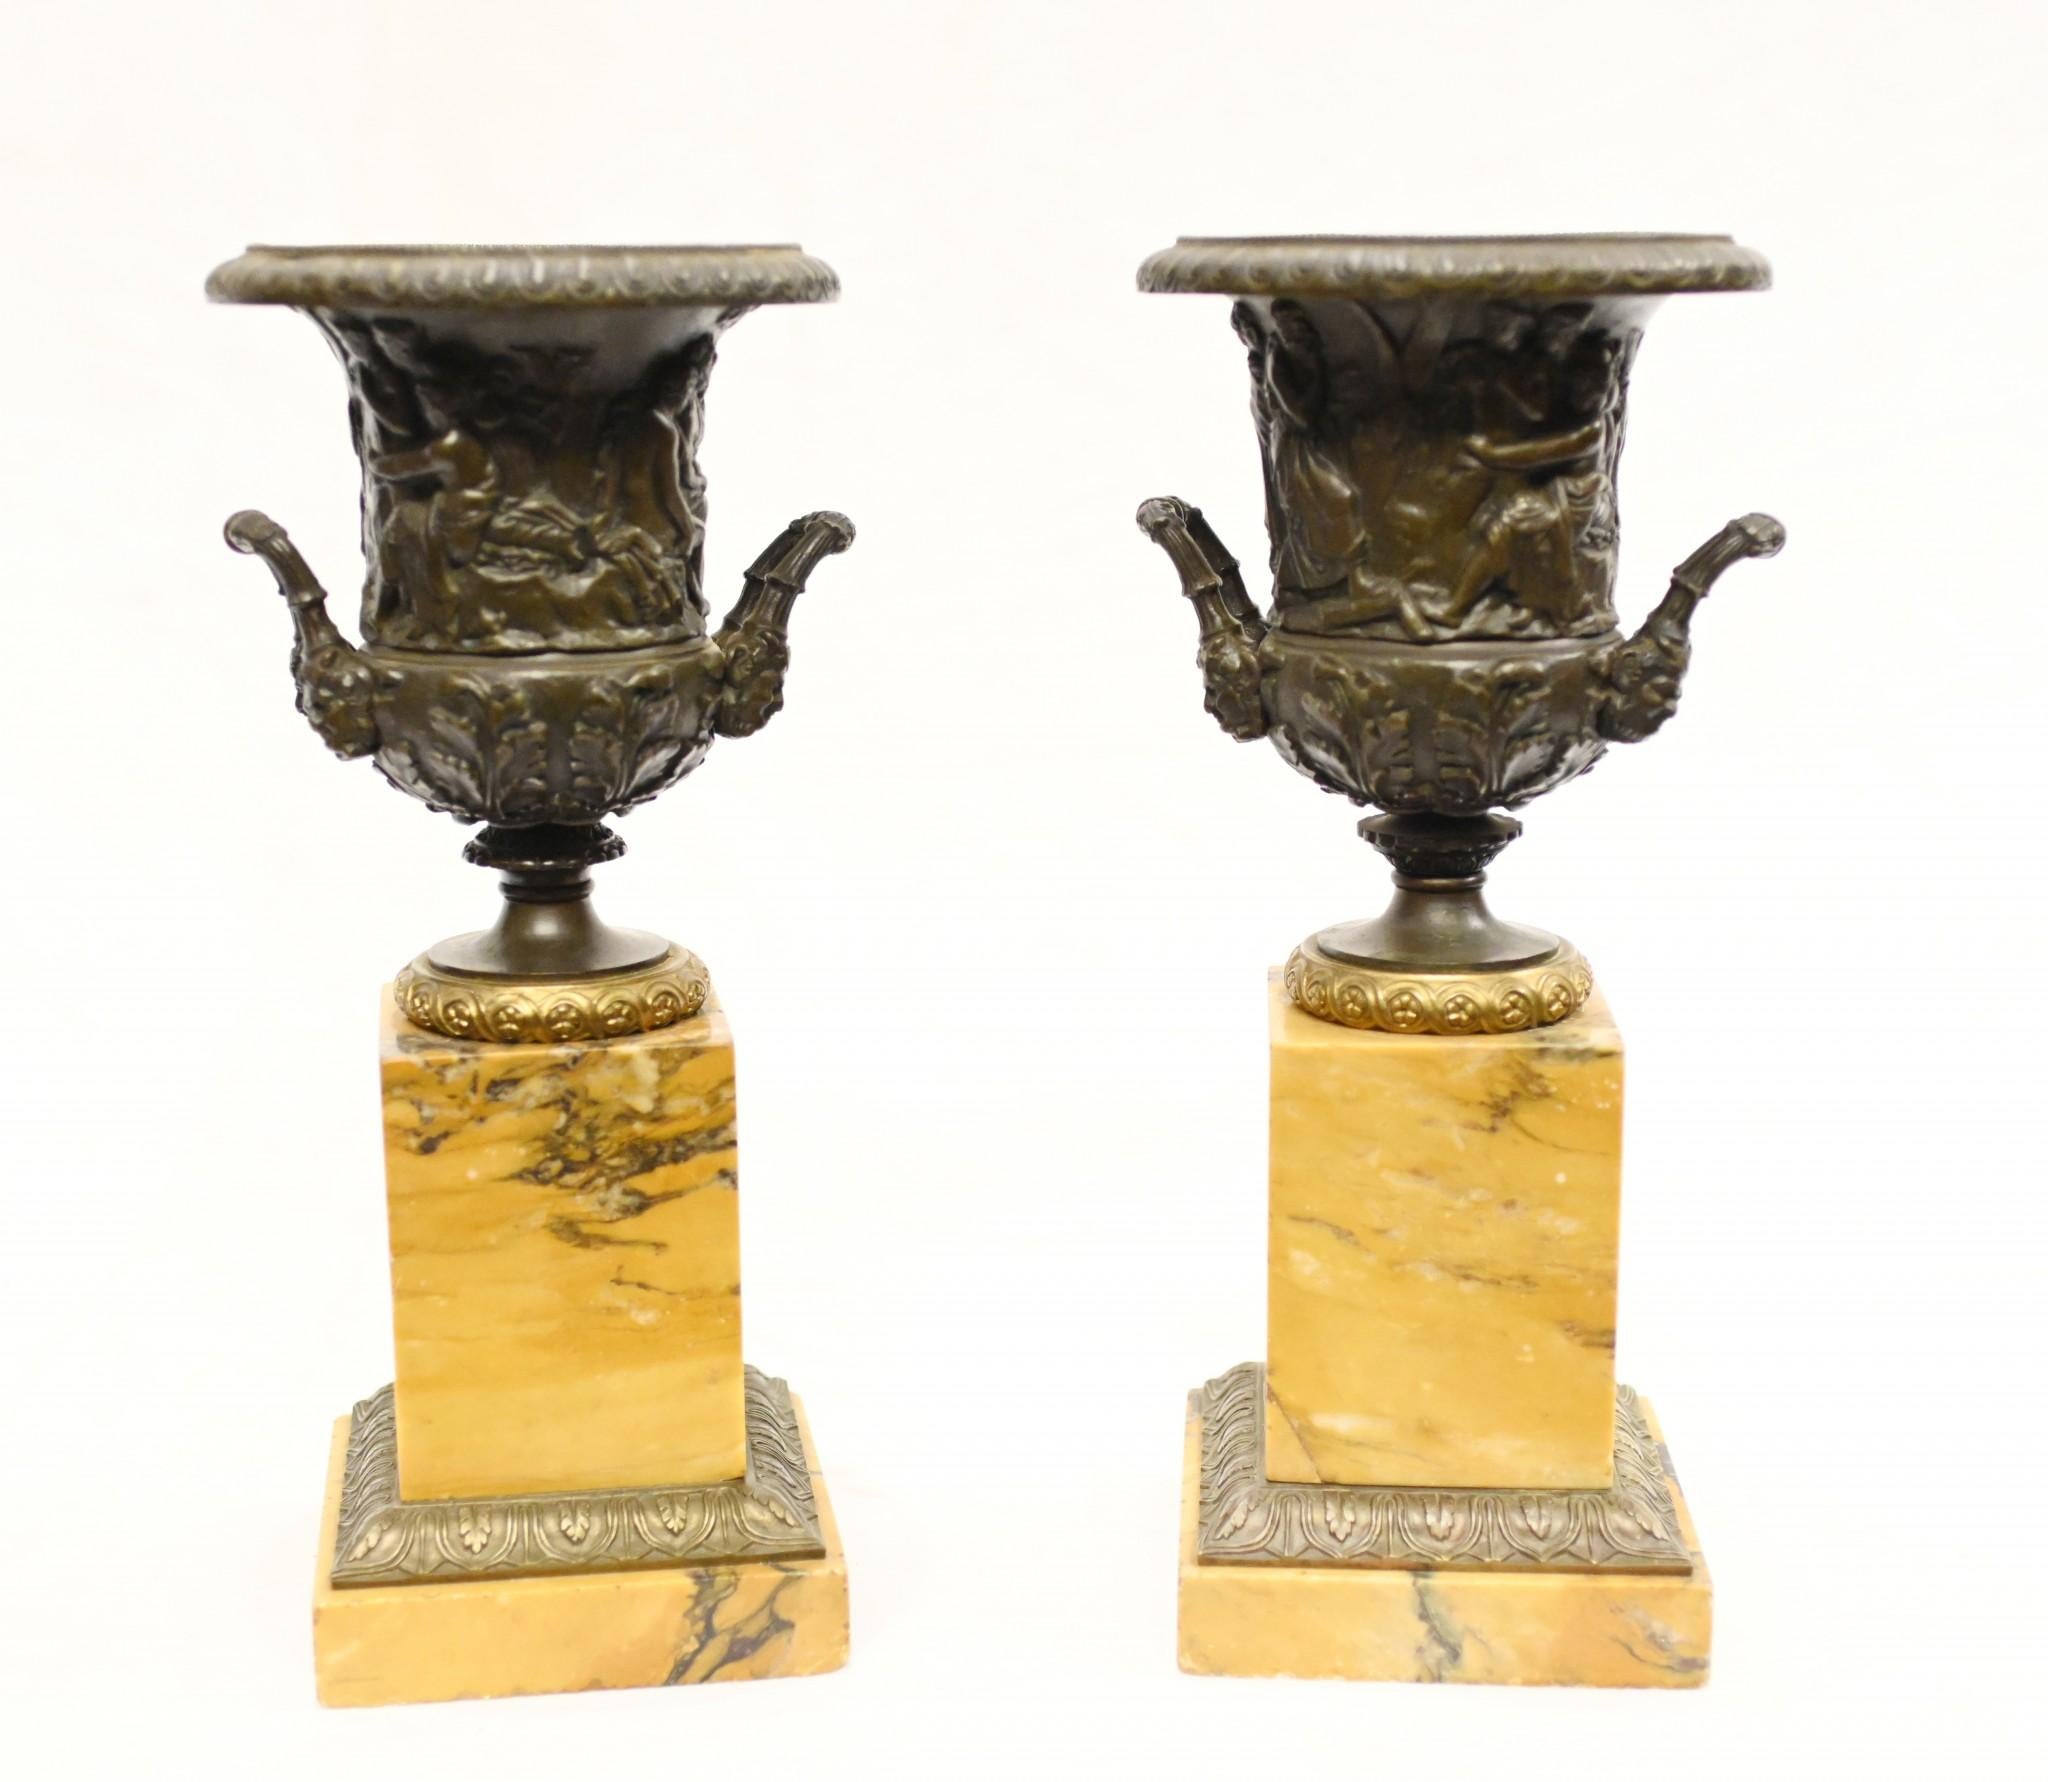 Glorieuse paire d'urnes Grand Tour en bronze et doré sur piédestal en marbre
Circa 1820 sur ces antiquités italiennes
Les urnes - de forme campane - reposent sur des socles en marbre de Sienne ornés de dorures.
J'adore la couleur rose saumon du